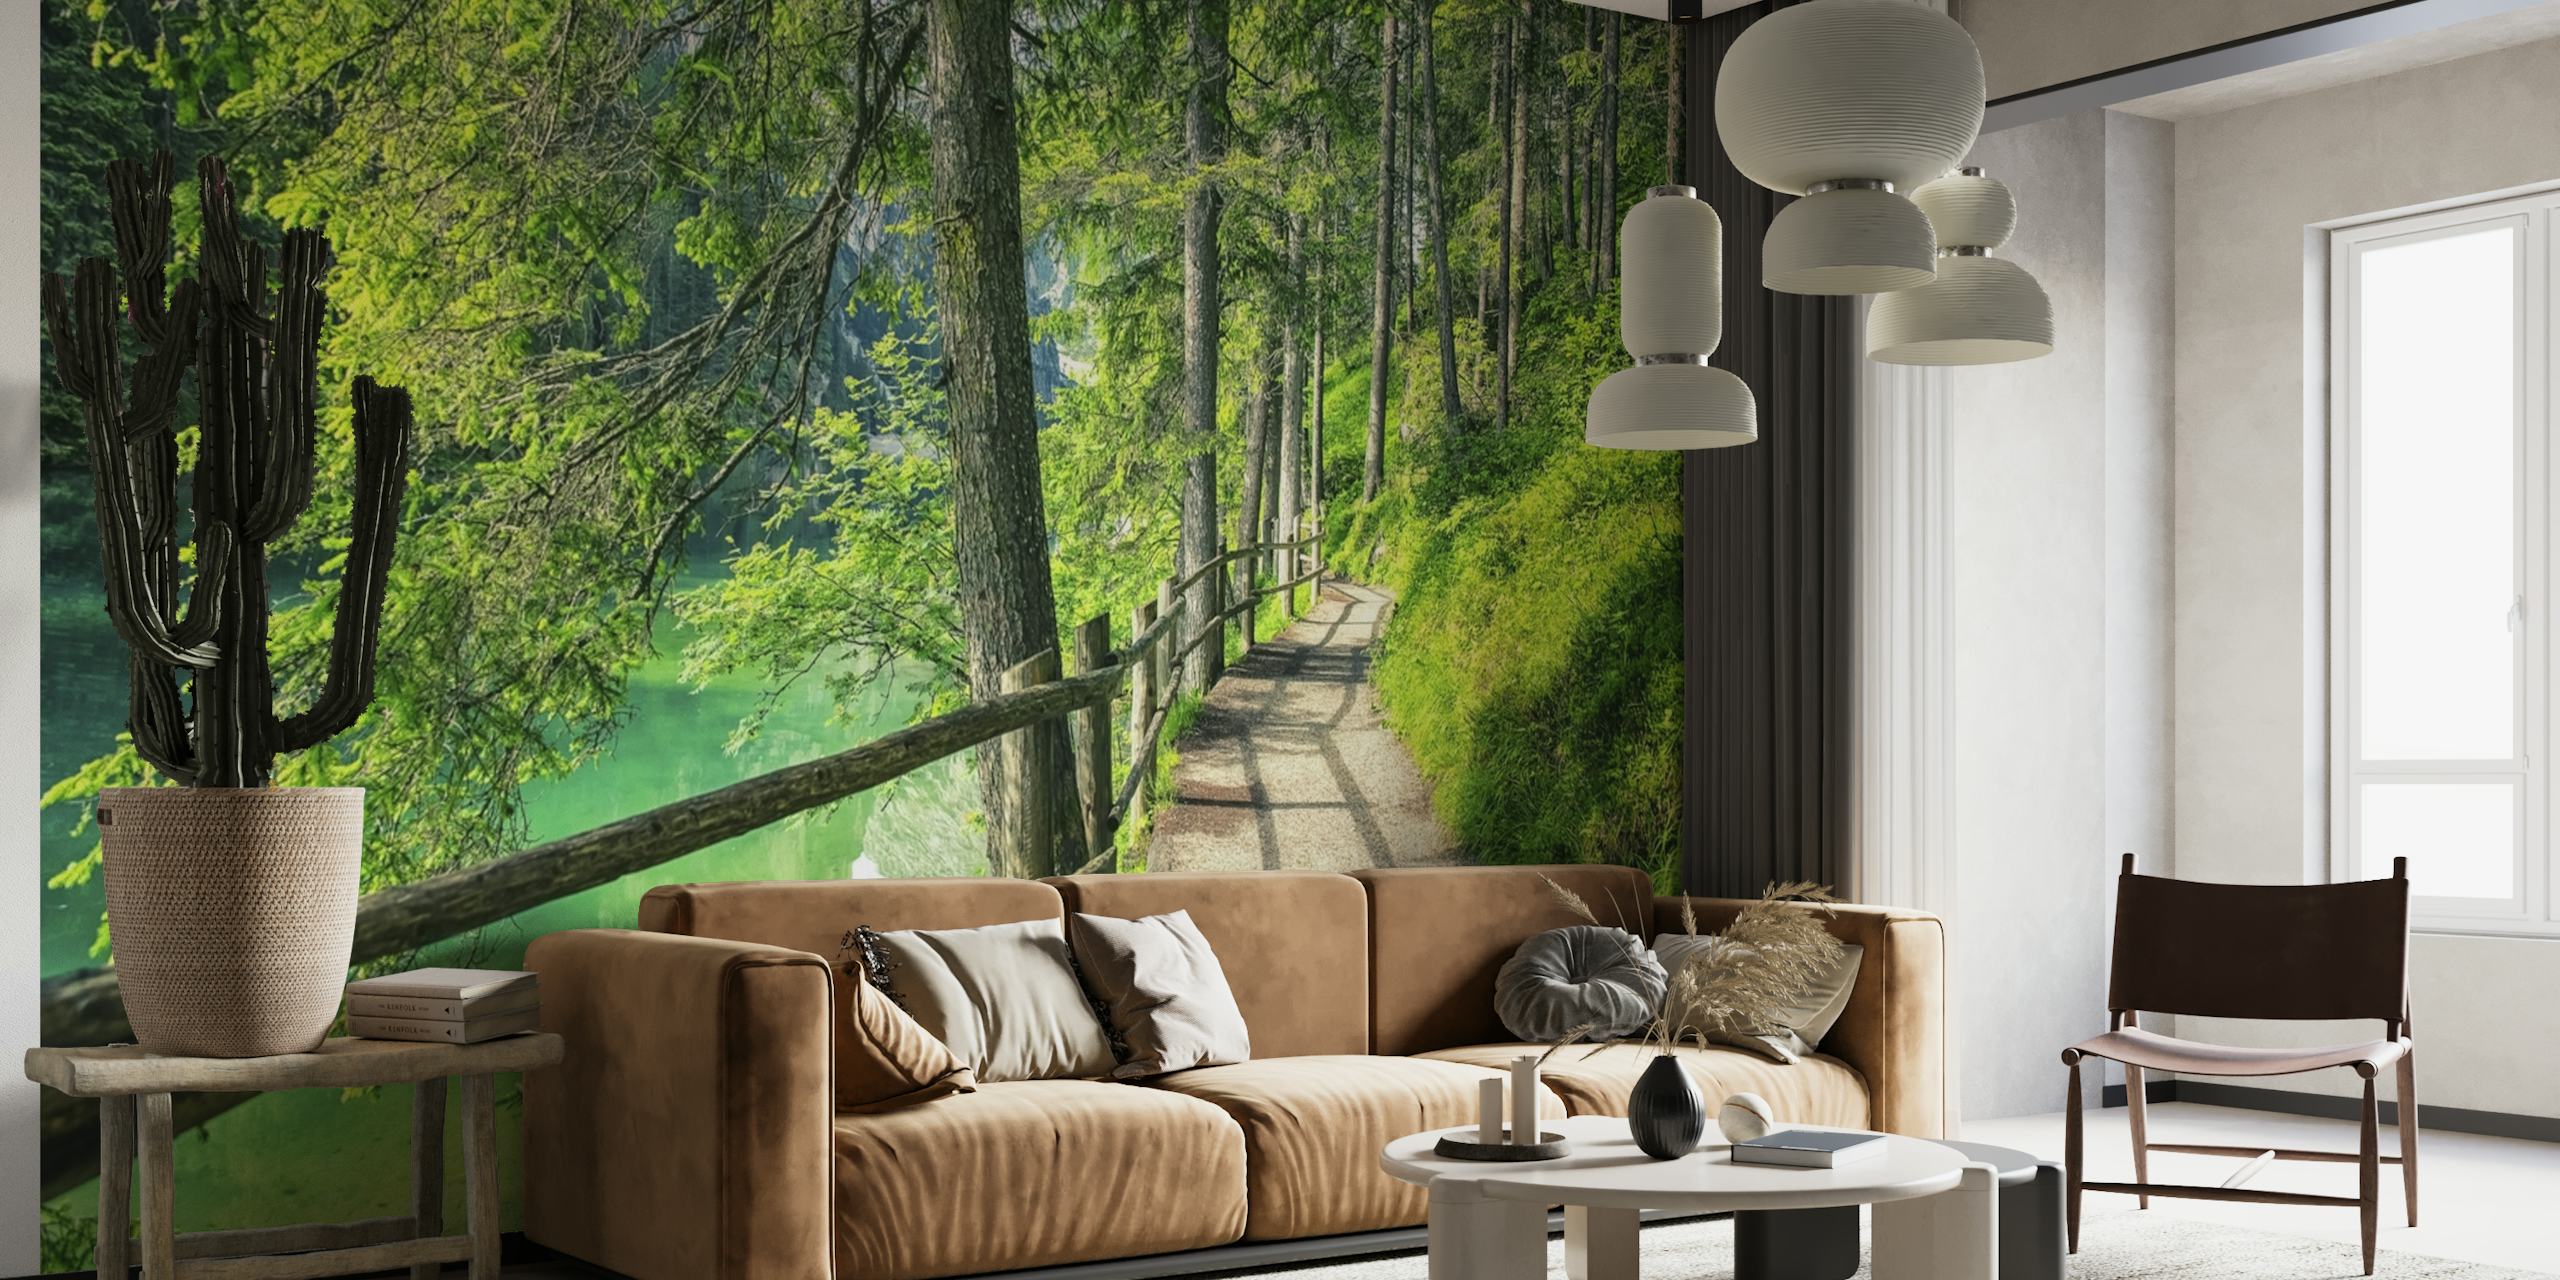 Vægmaleri af en fredelig skovsti med levende grønt løv og et plankeværk